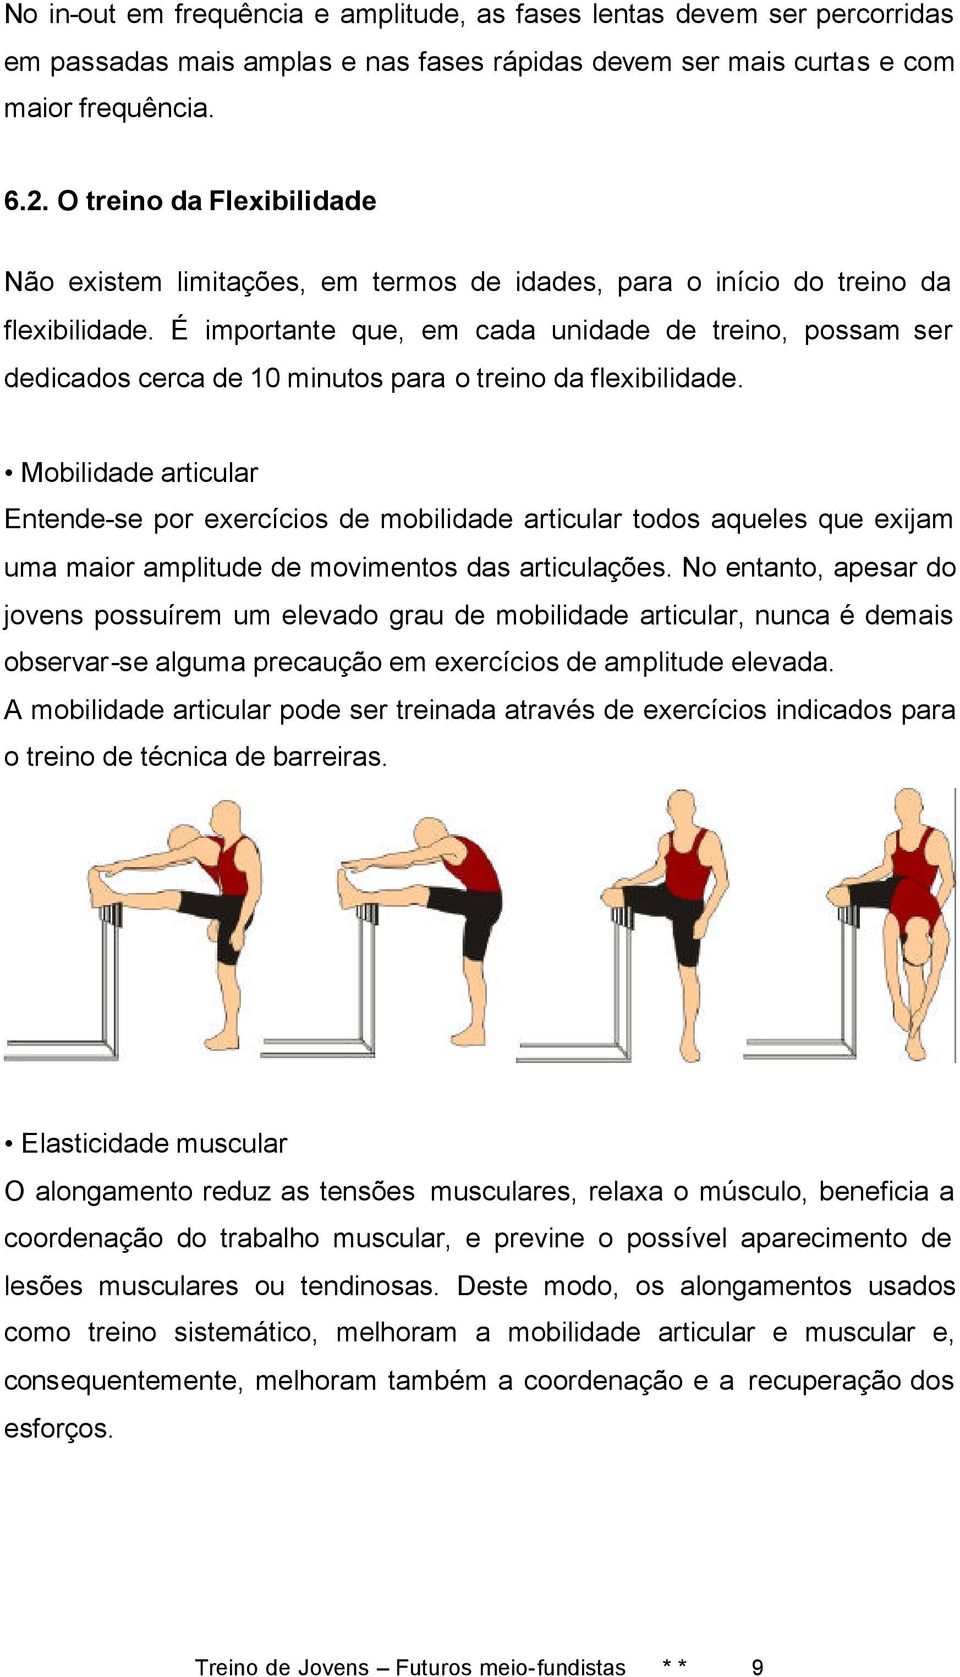 É importante que, em cada unidade de treino, possam ser dedicados cerca de 10 minutos para o treino da flexibilidade.